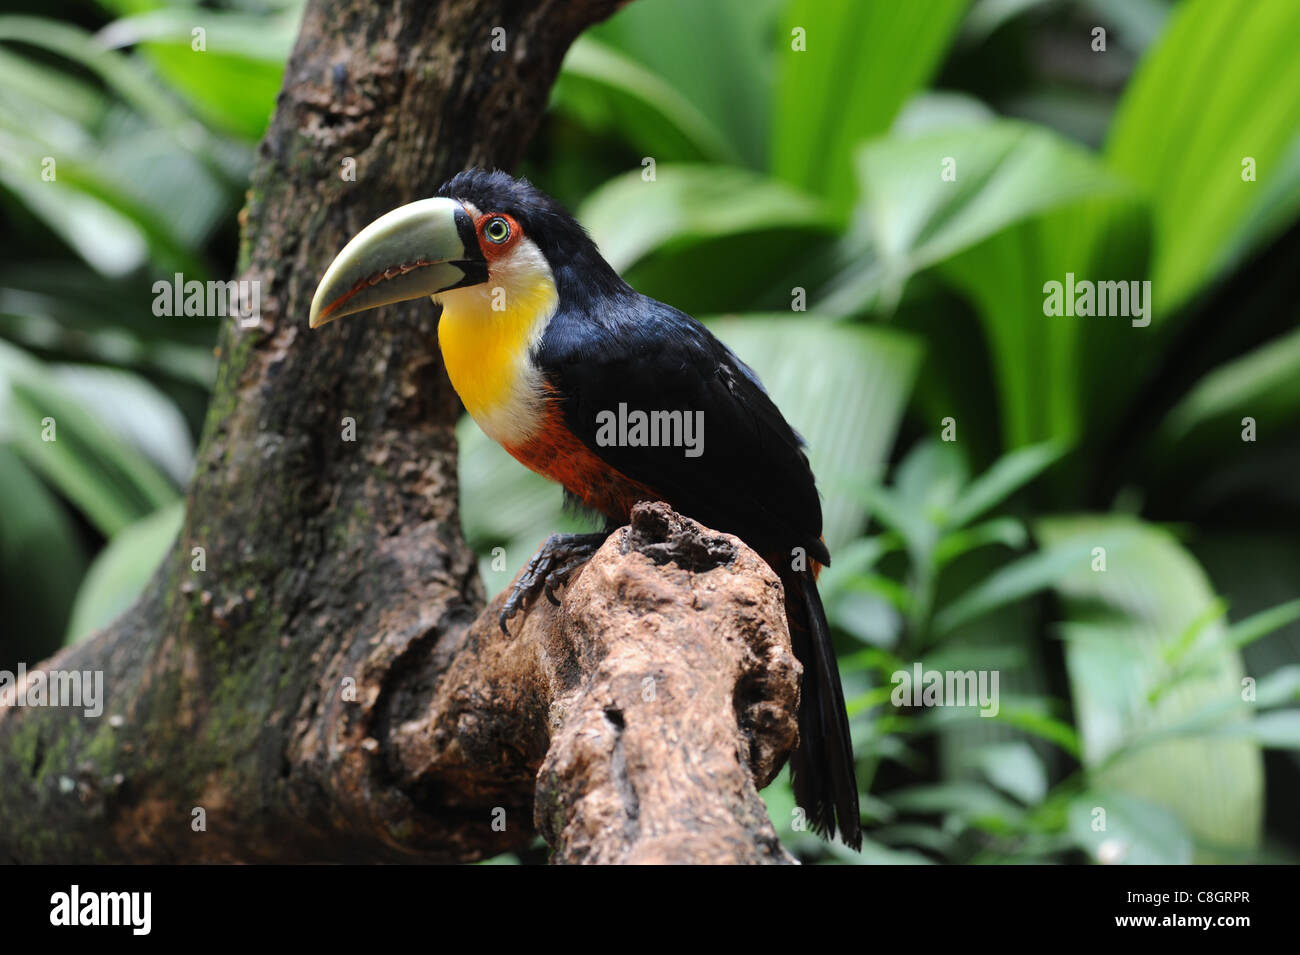 Brésil, Iguazu, toucan, oiseau, bec, en grande partie Banque D'Images